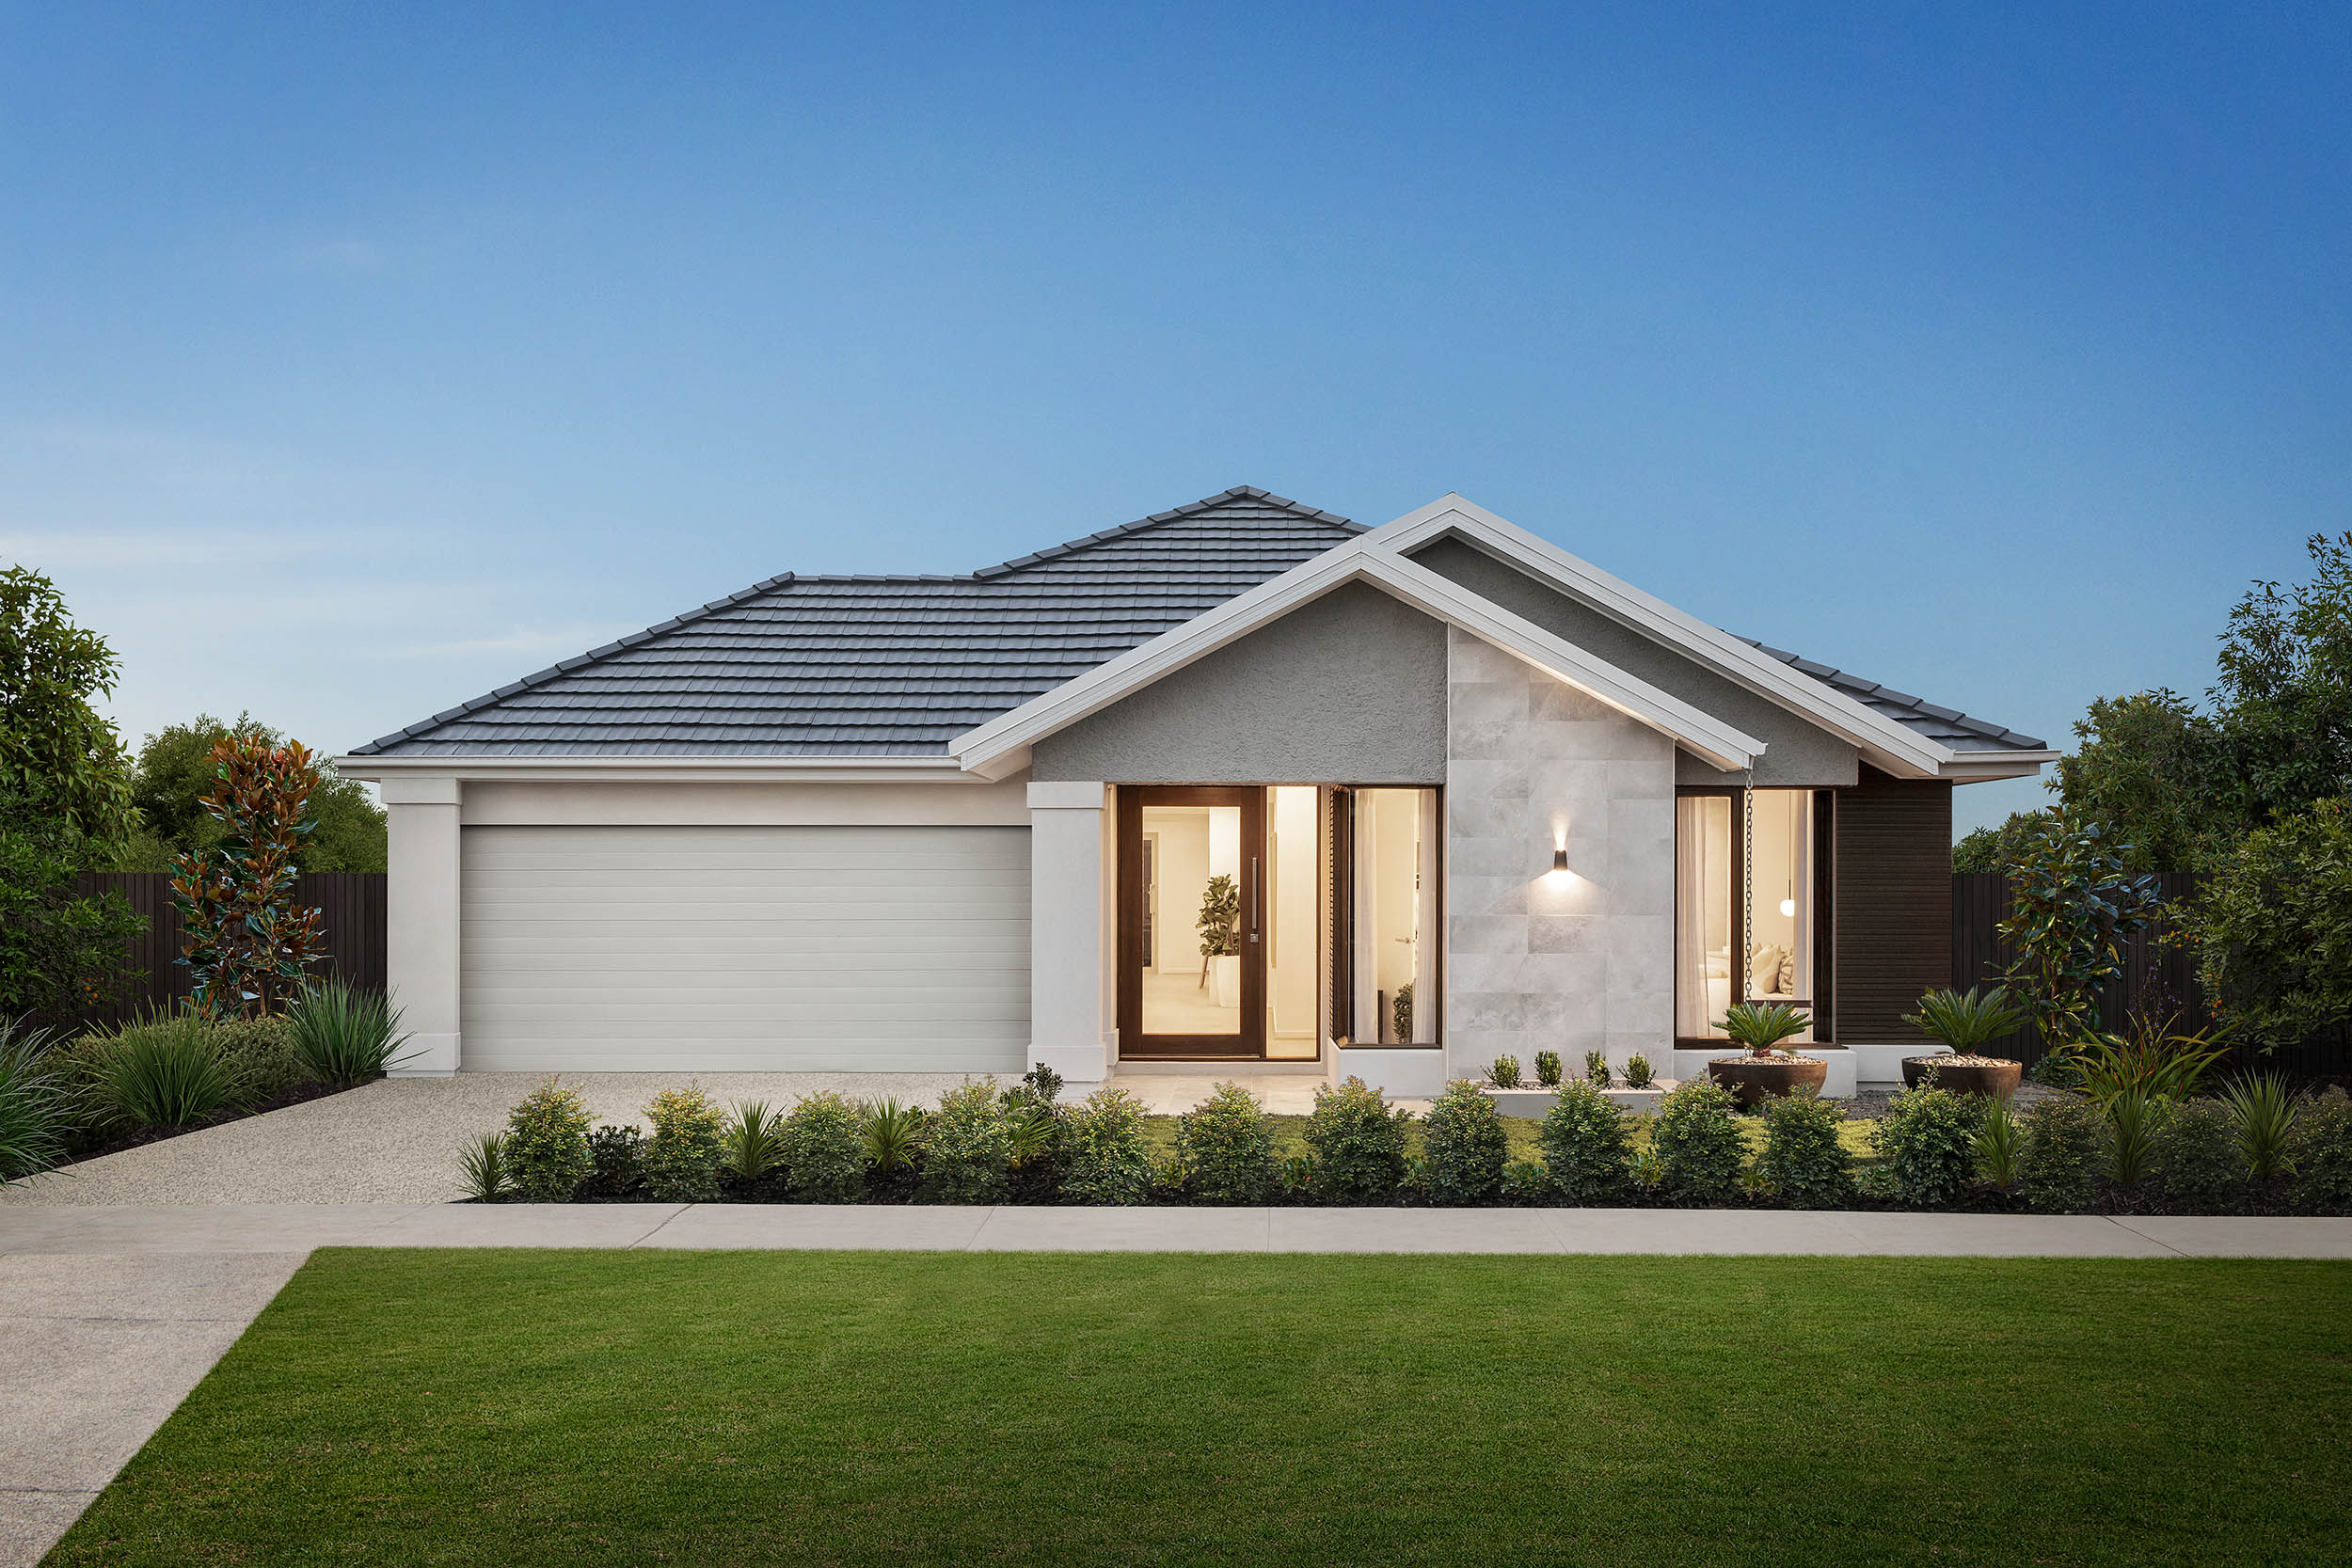 3 Bedroom House Plans | Australia's #1 Home Builder